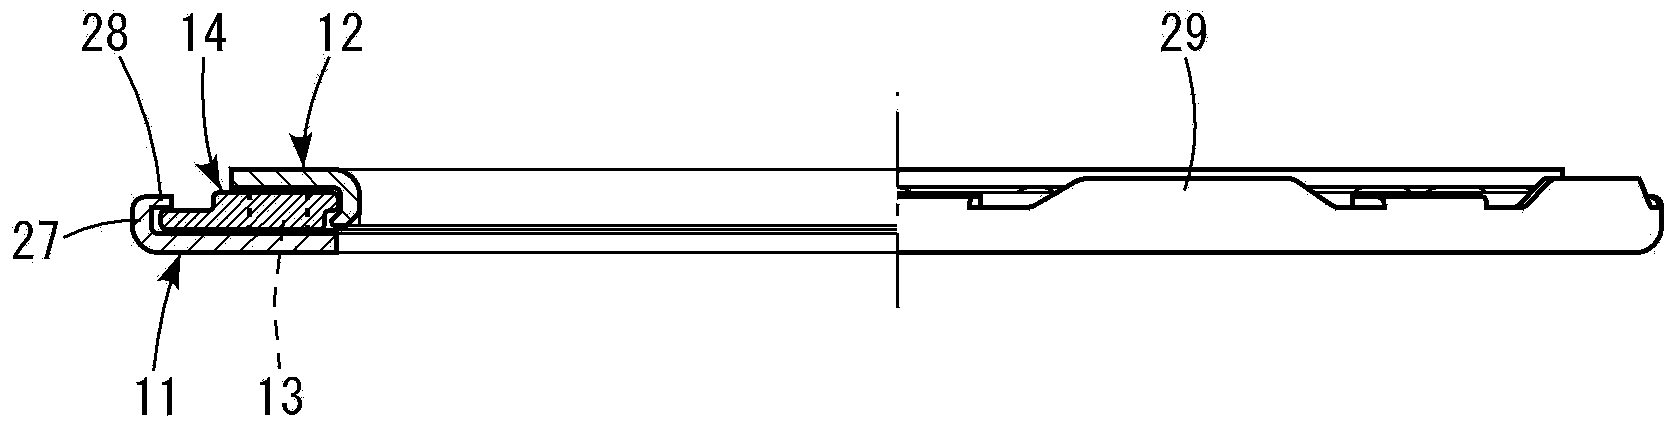 Thrust bearing holder and thrust bearing